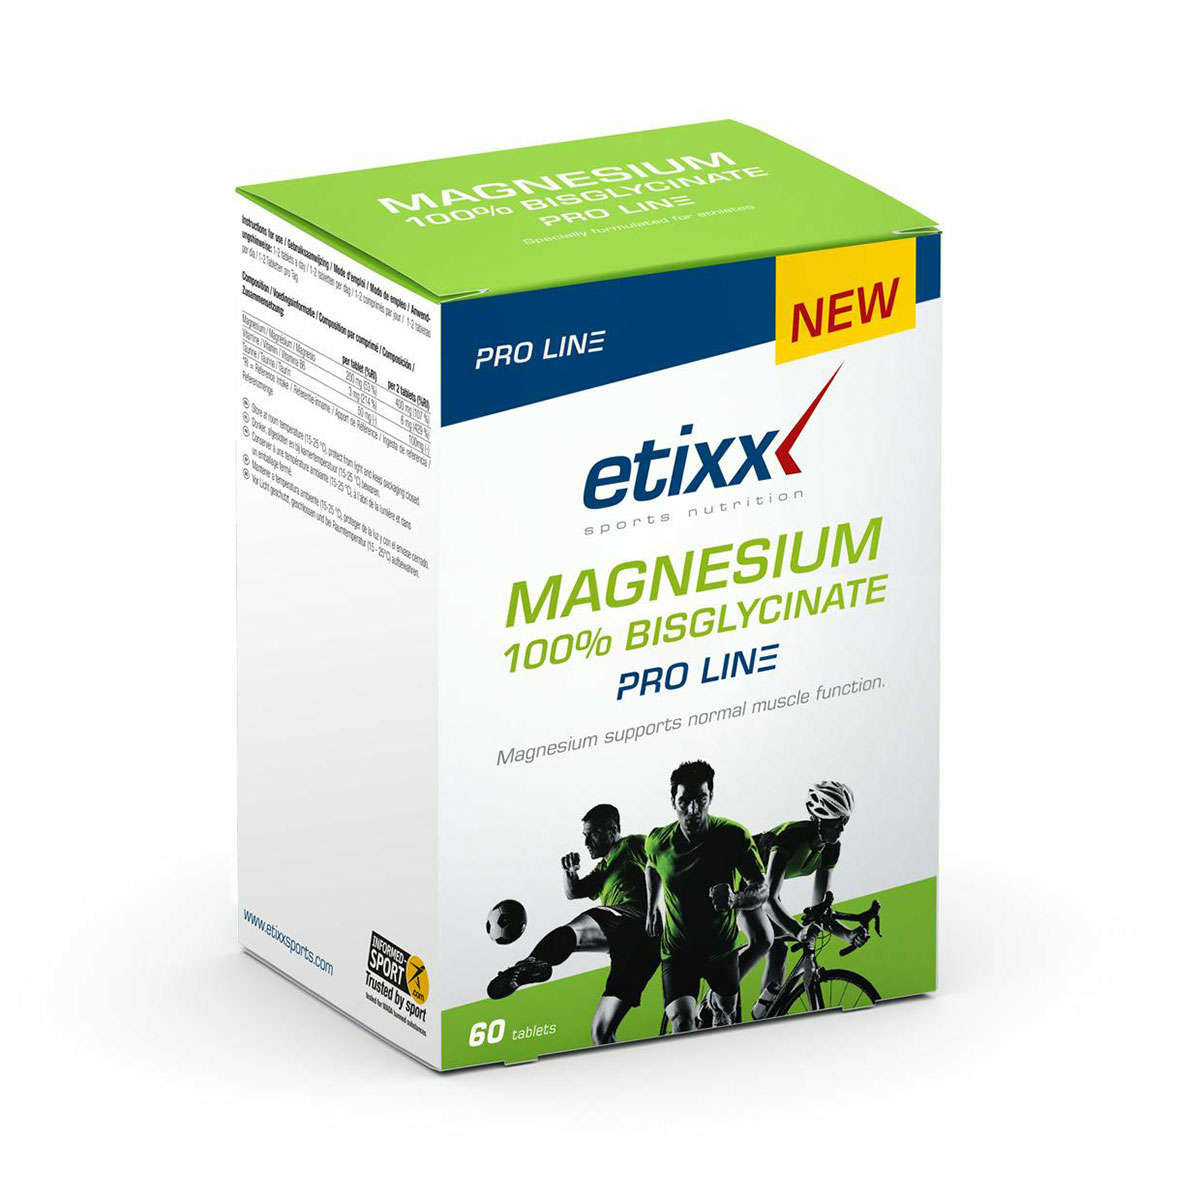 Etixx Magnesium 100% Bisglycinate Pro Line 60 stuks